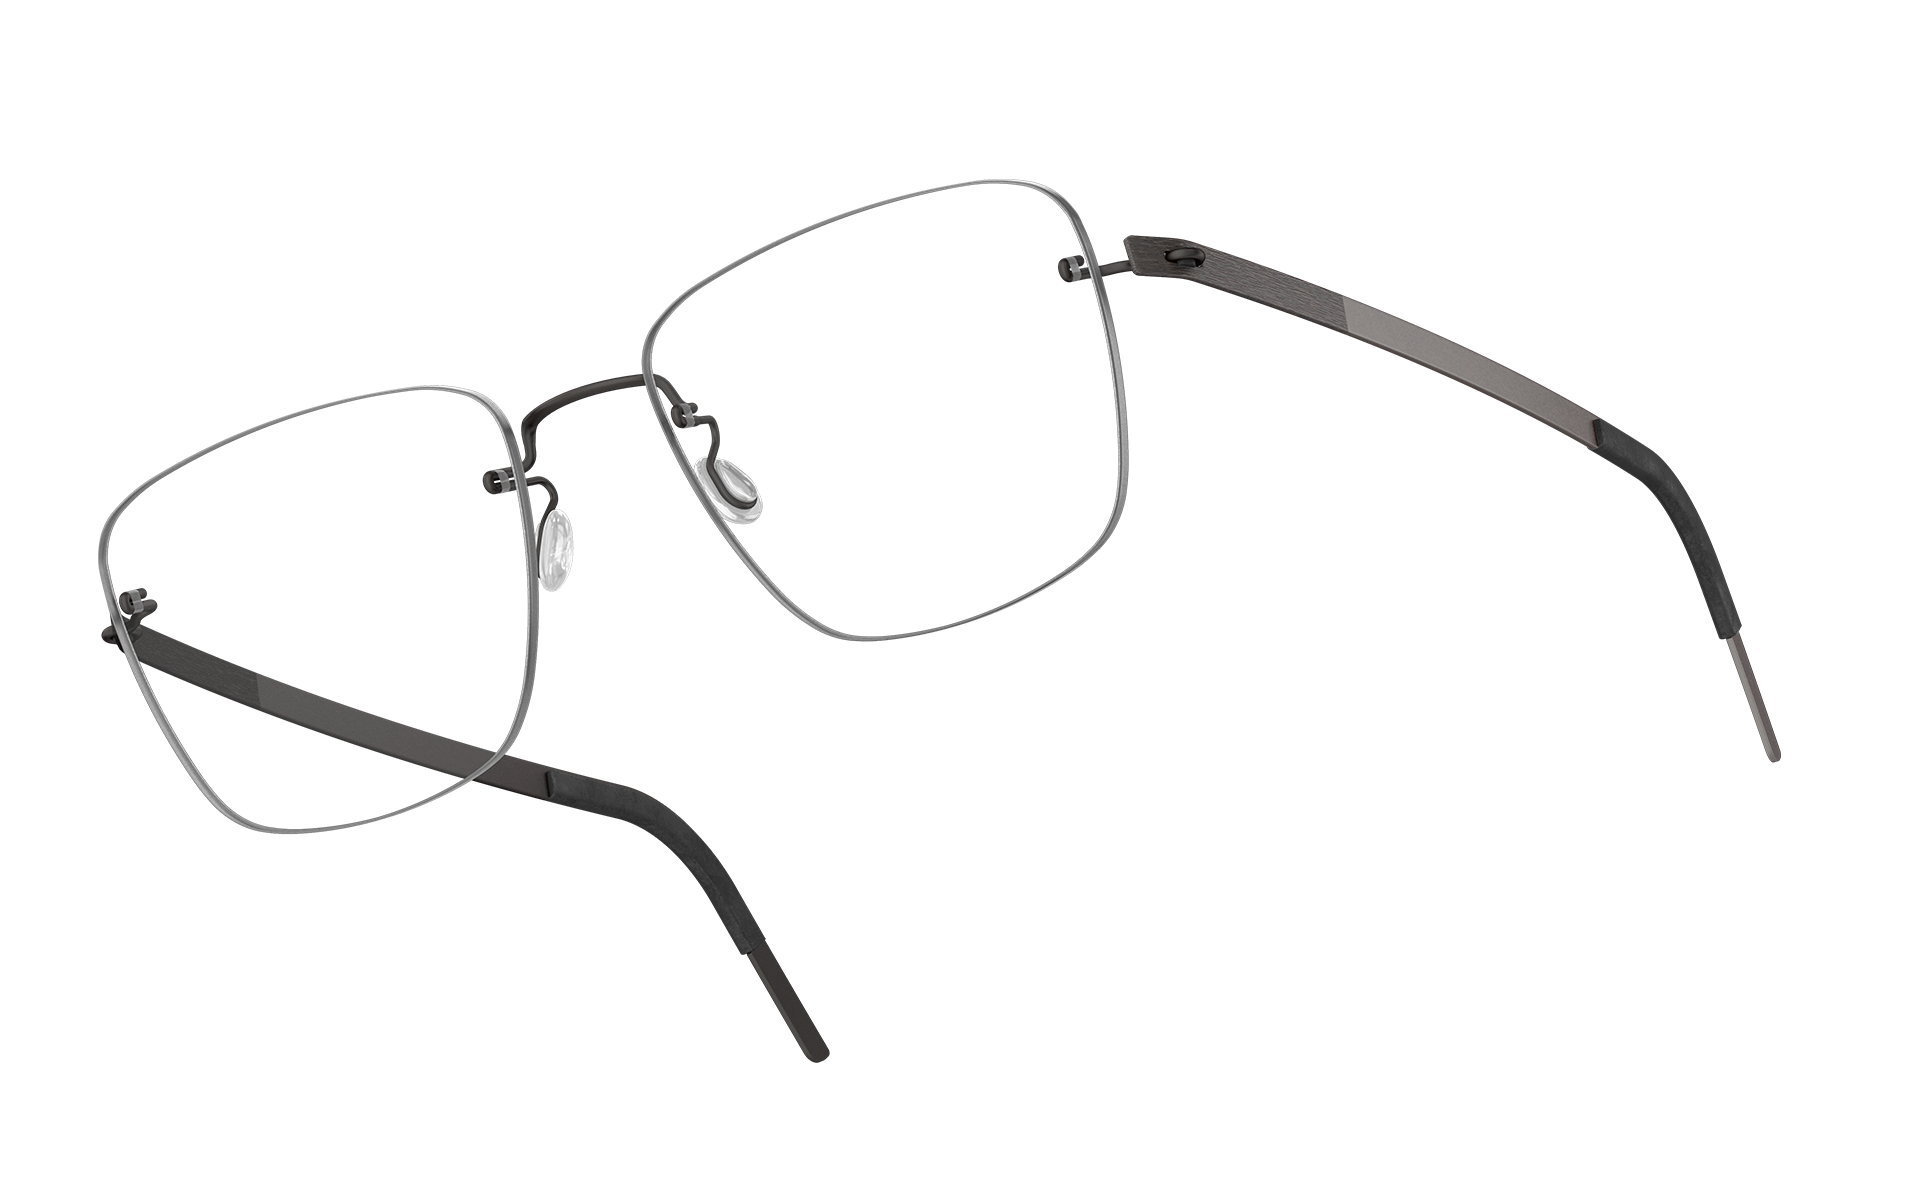 LINDBERG Moderni occhiali dalla forma rettangolare in titanio colore grigio scuro U9